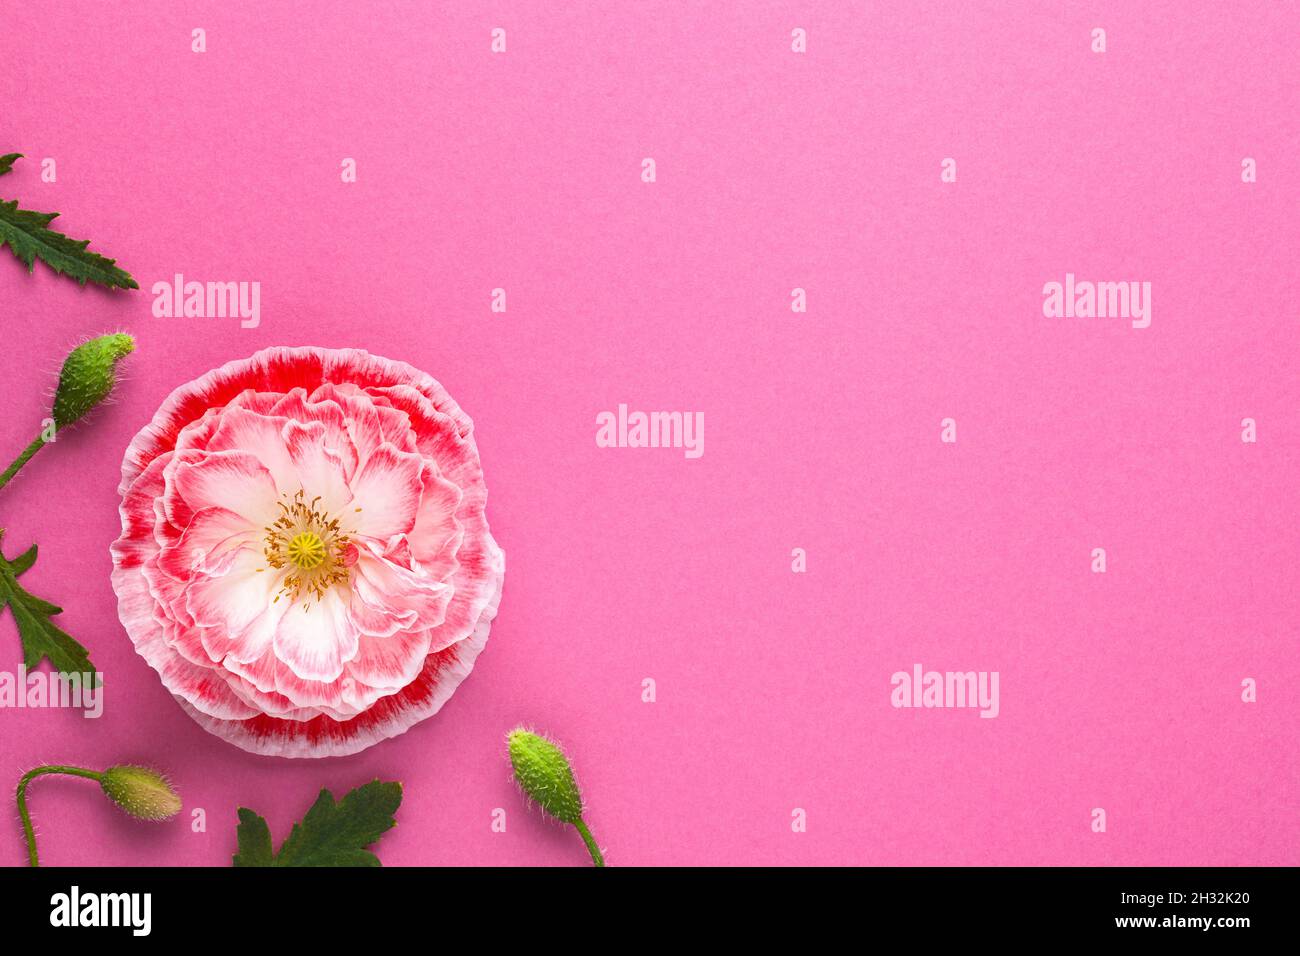 Fond de papier rose avec fleur de pavot rose.Espace vide pour le texte.Vue de dessus Banque D'Images